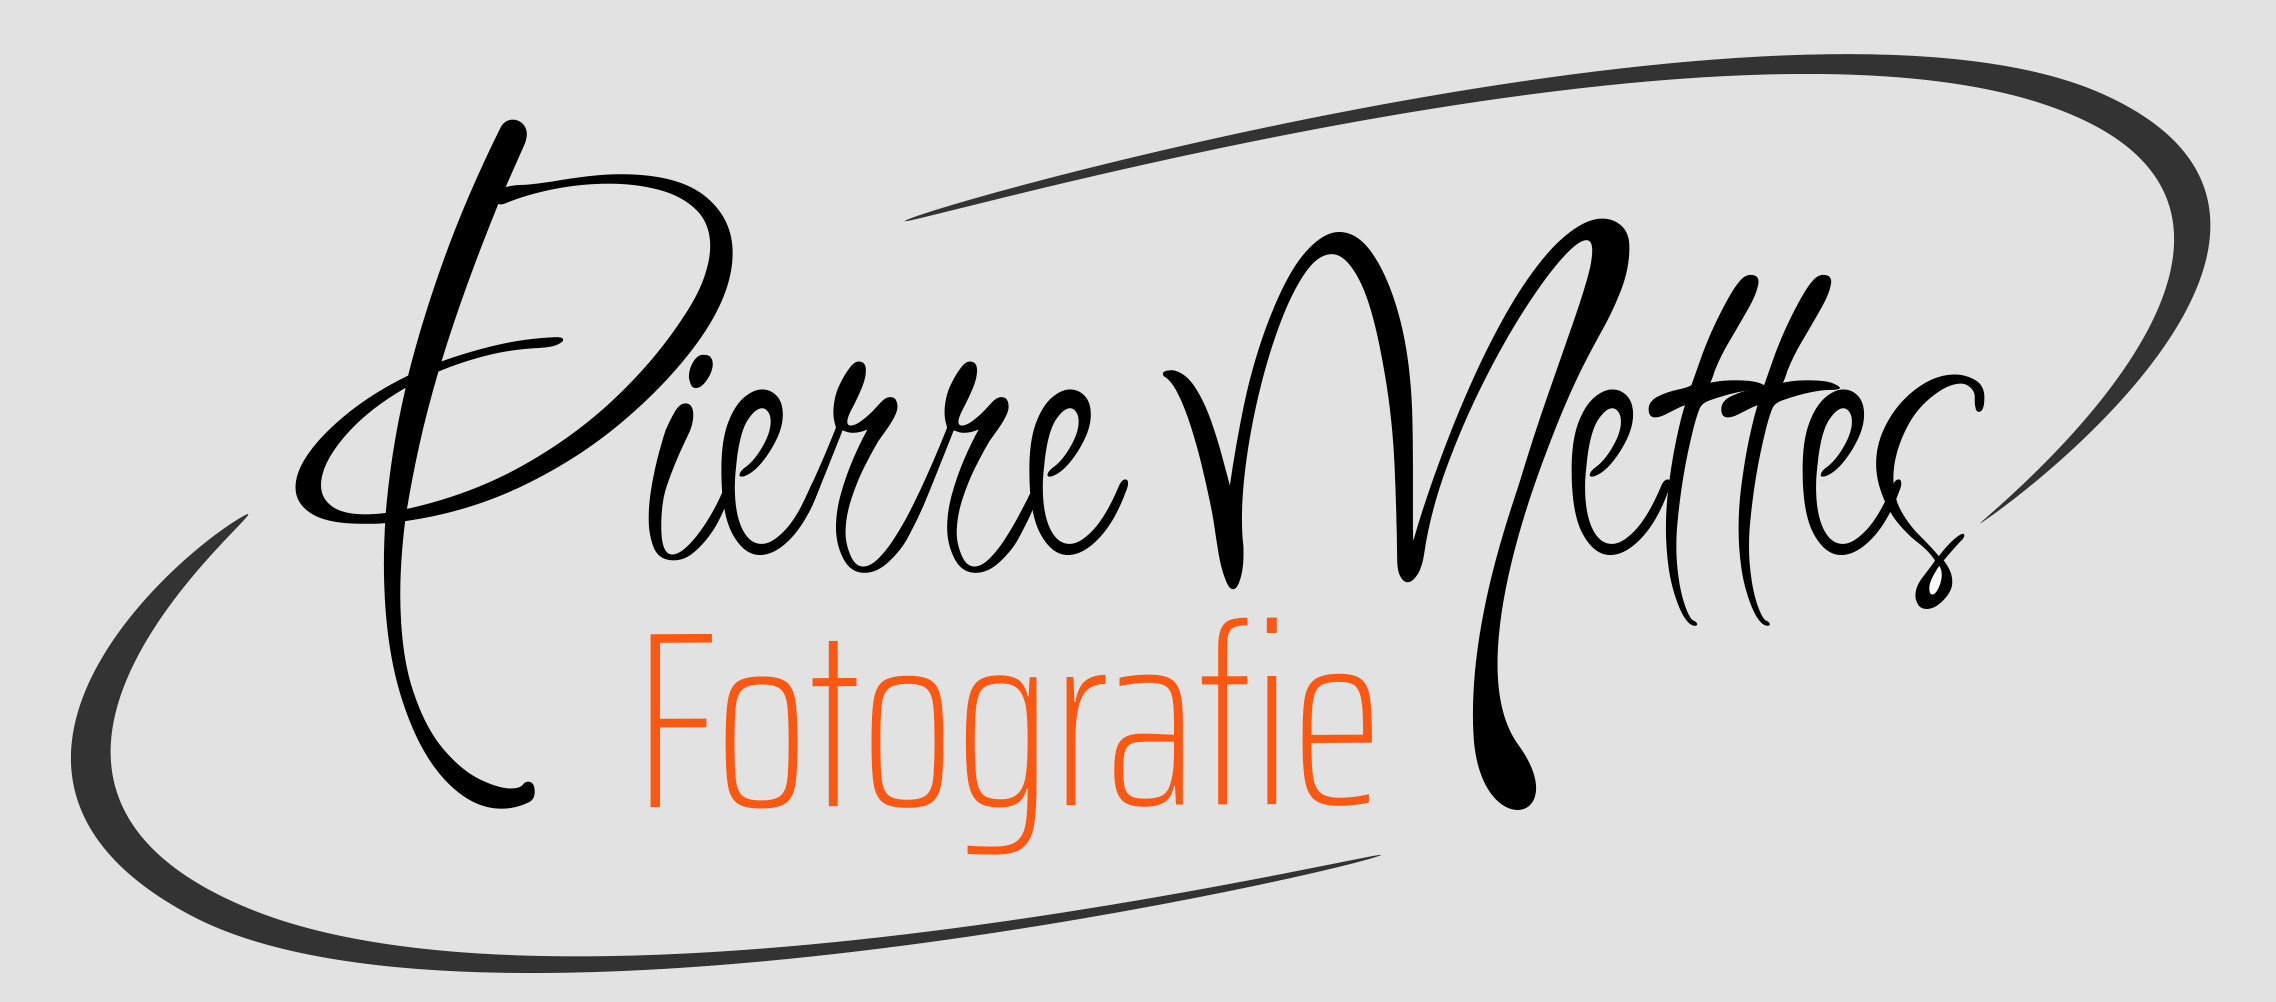 Pierre Mettes Foto Grafisch